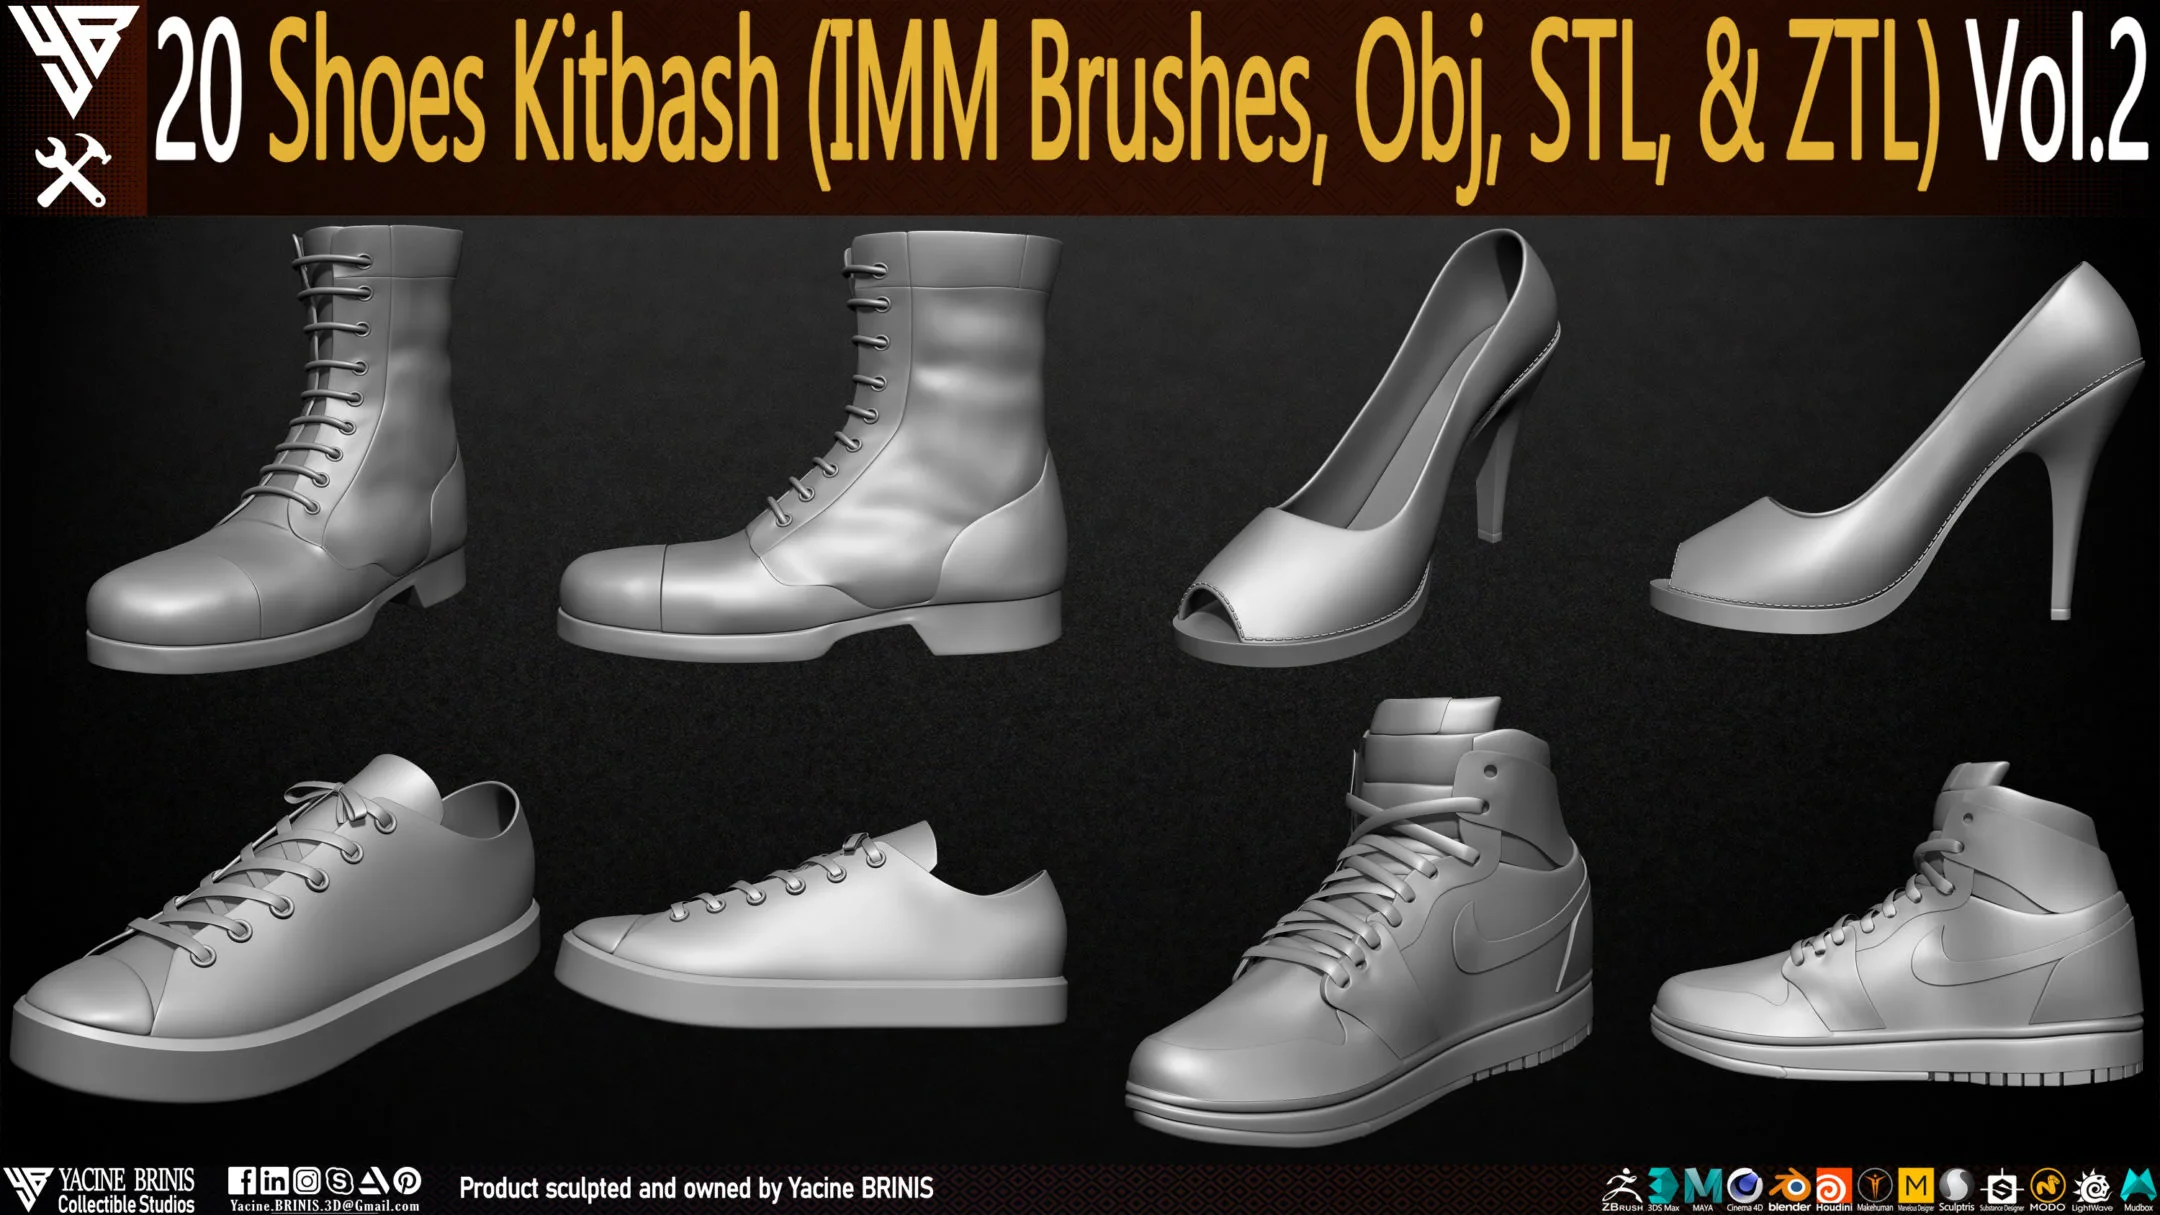 20 Shoes Kitbash (IMM Brush, Obj, STL, & ZTL) Vol 02